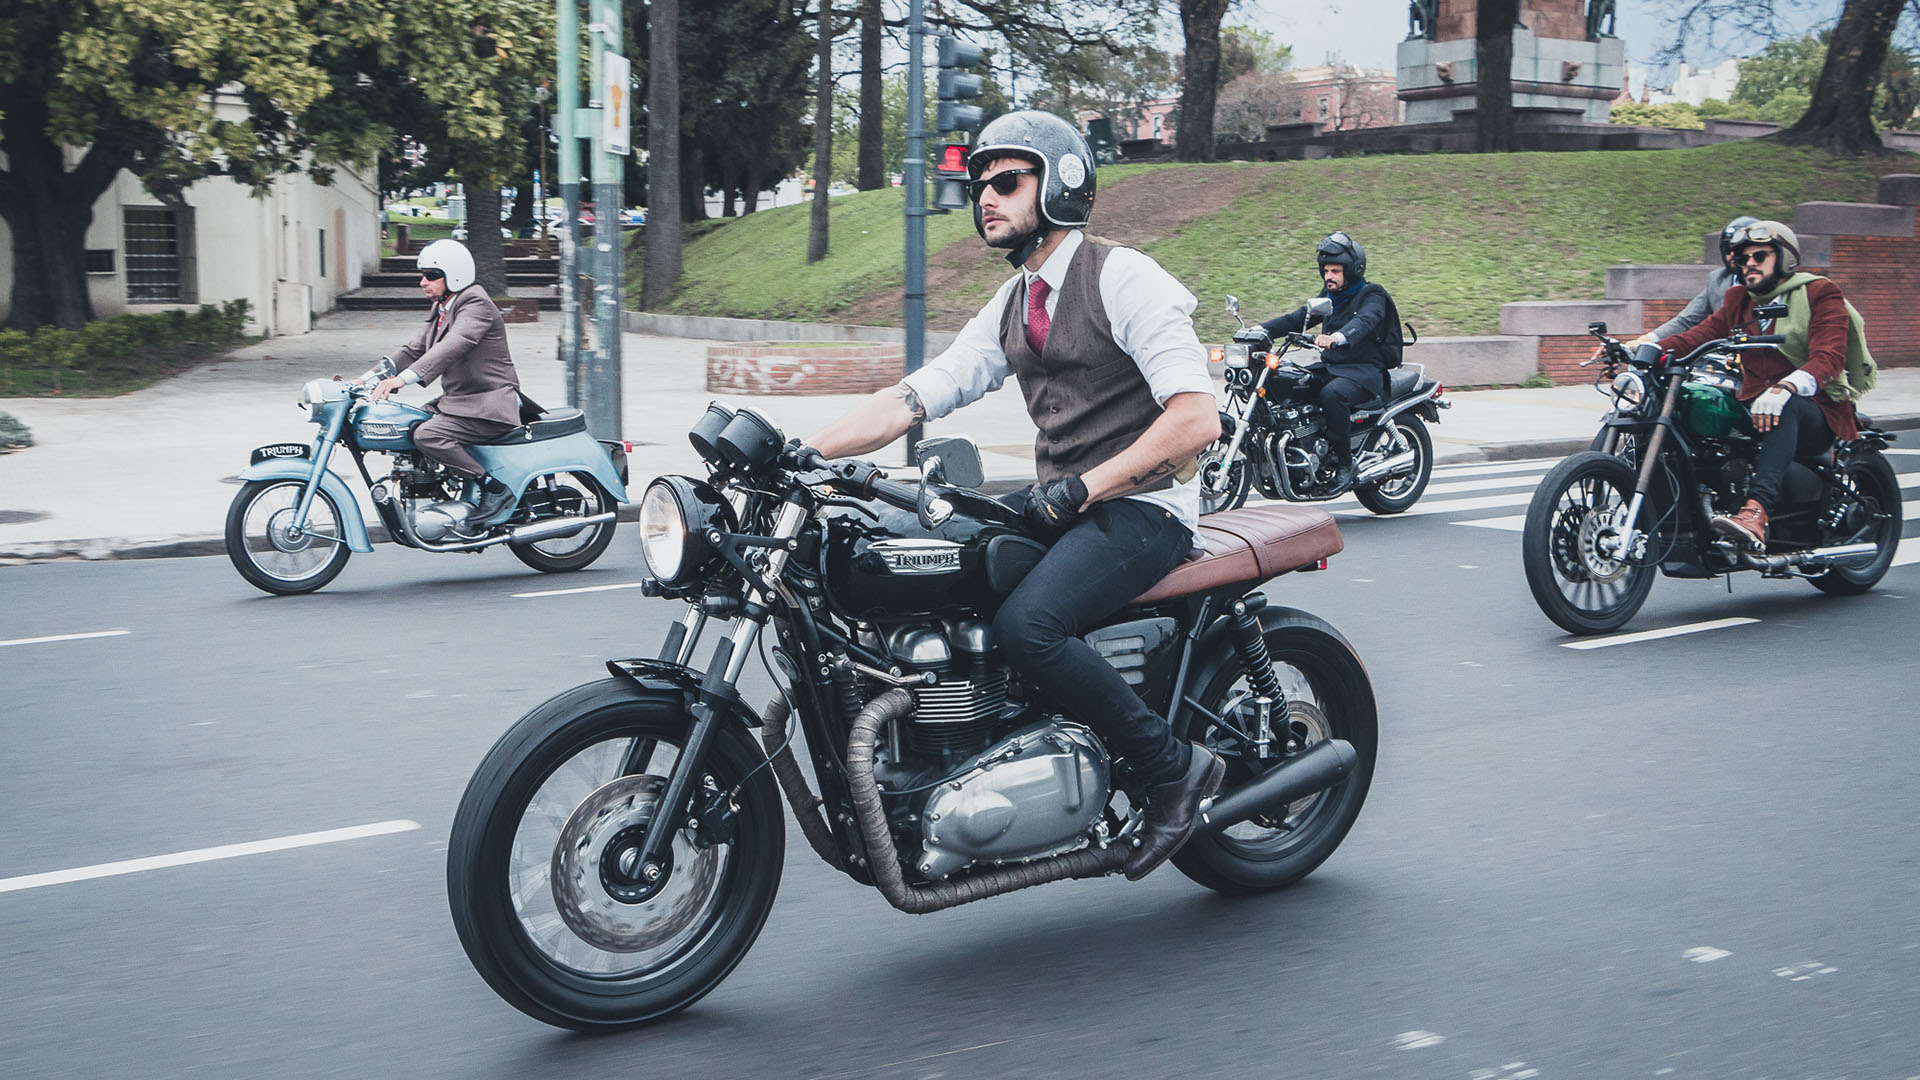 ¿Preparado para el Distinguished Gentleman’s Ride 2023? La elegancia en moto tomará las calles el 21 de mayo